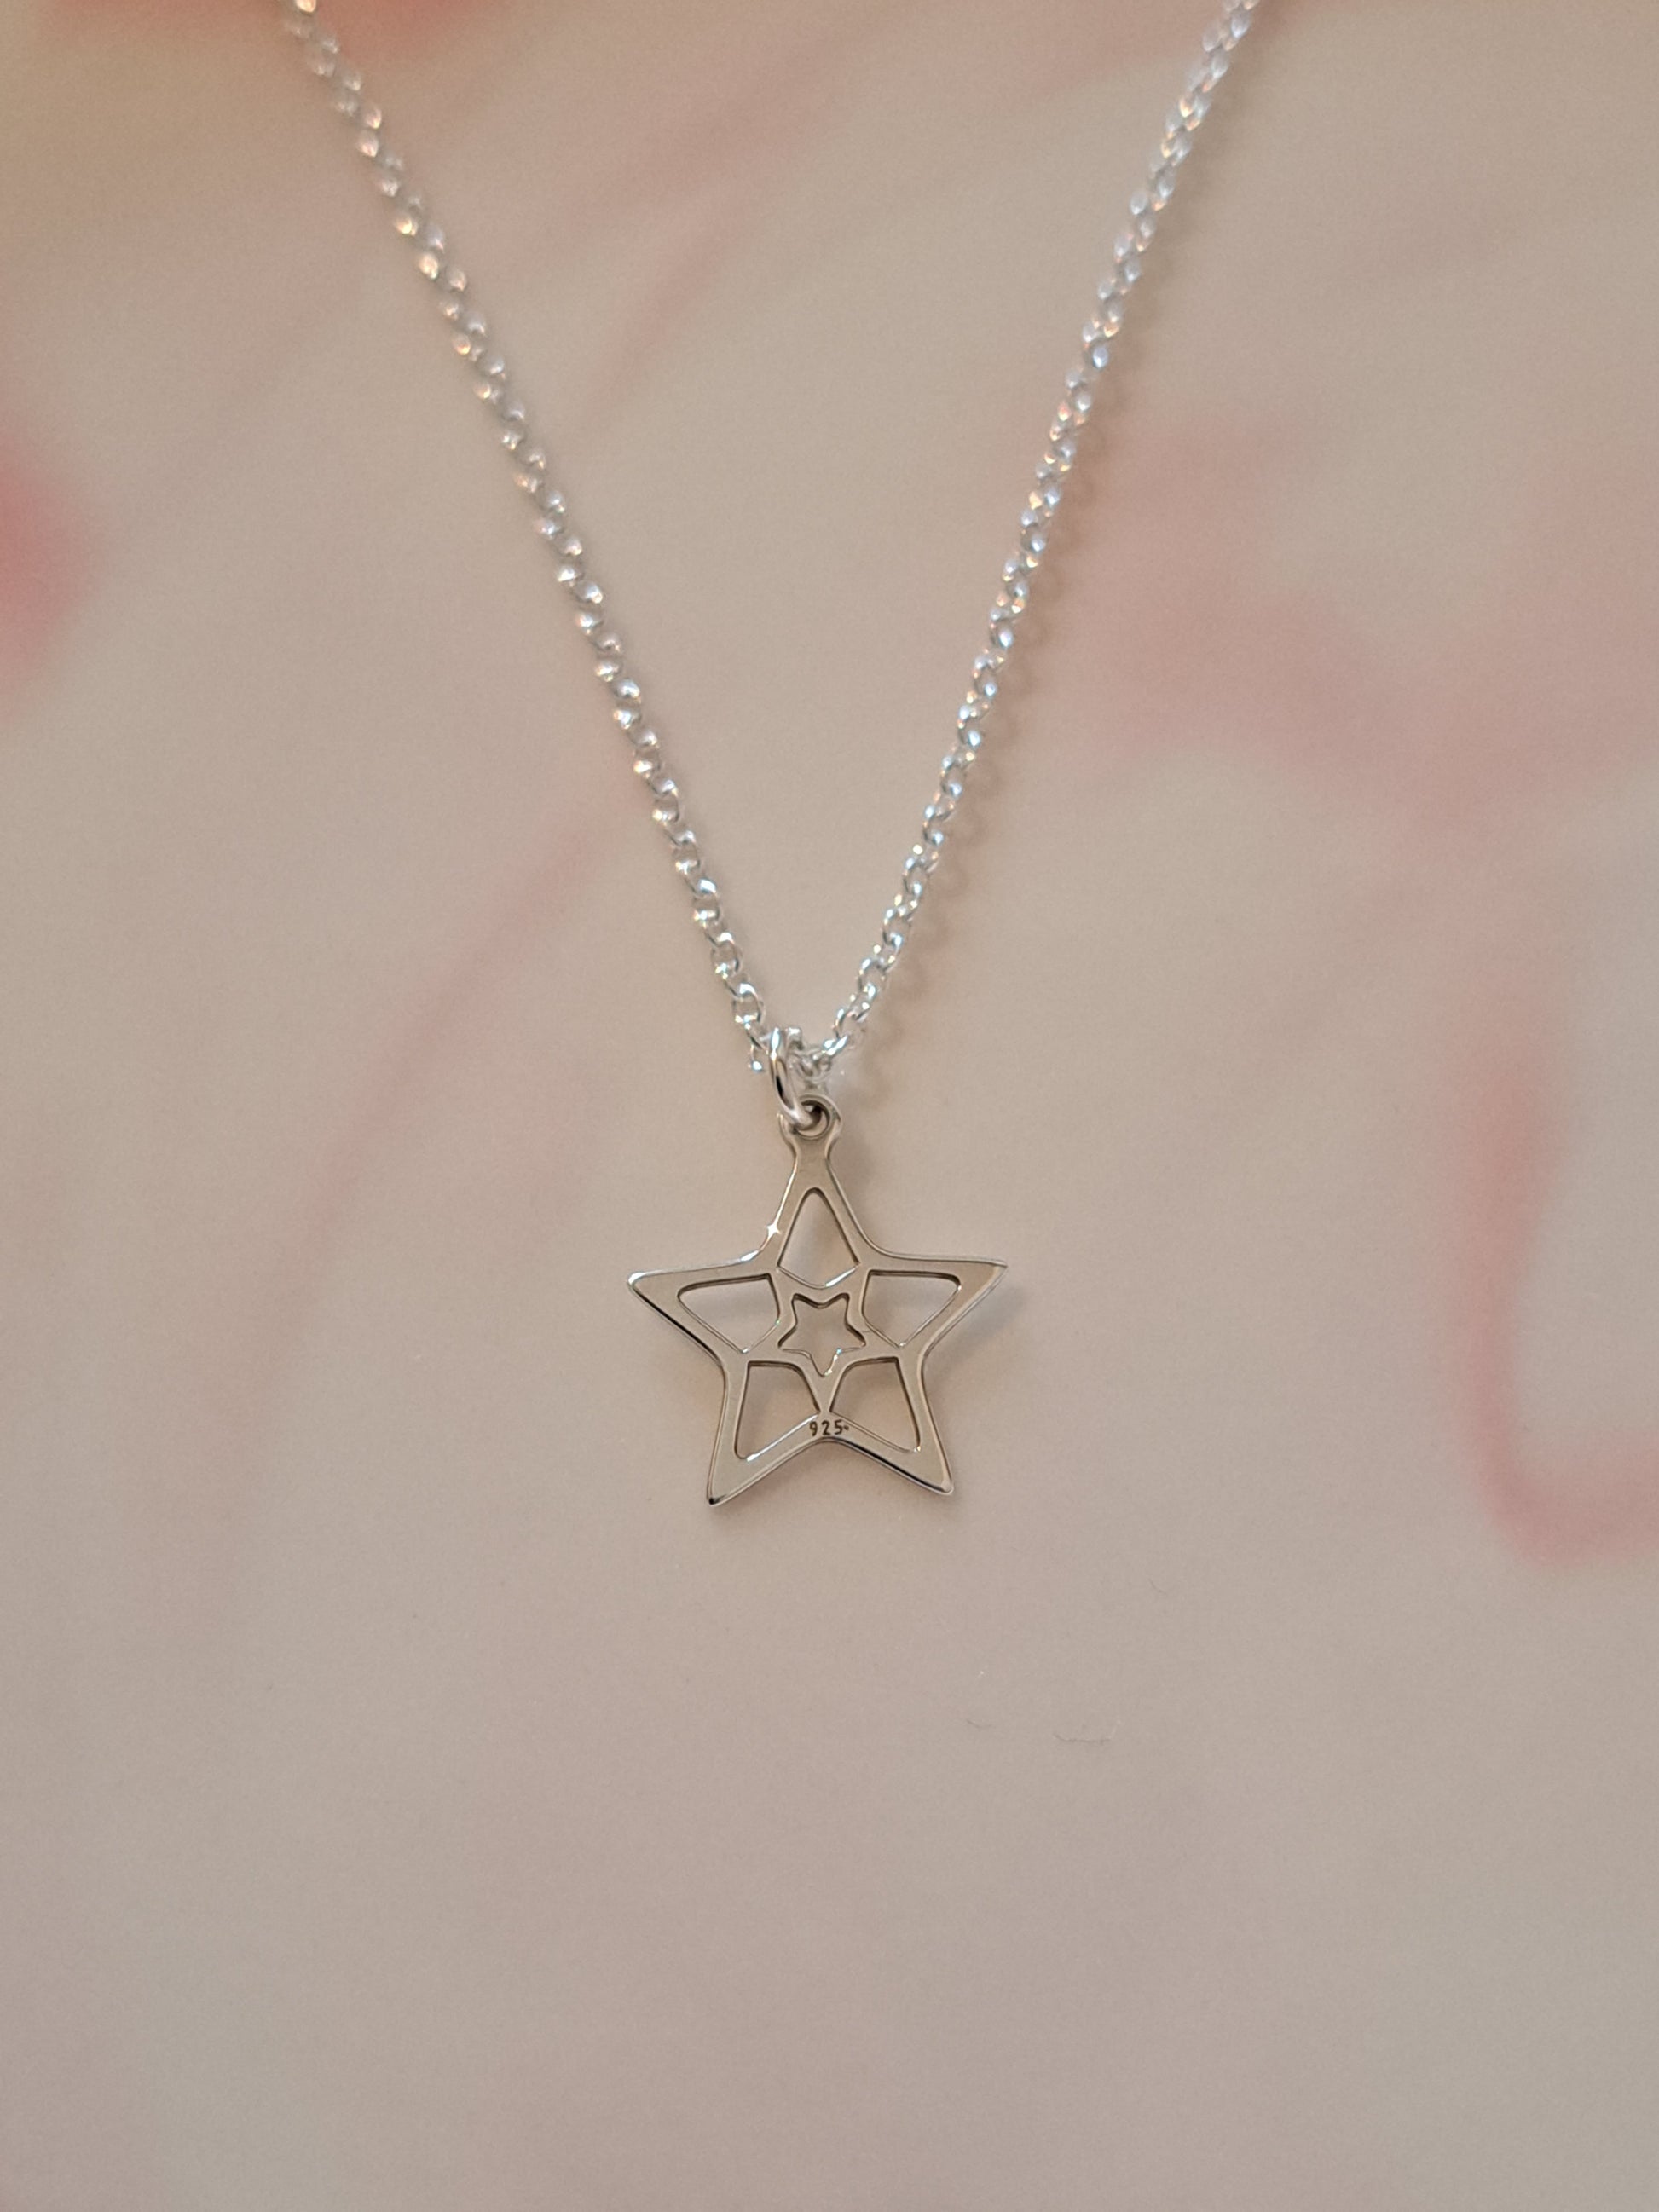 Collier femmes fine chaîne en argent pendentif étoile. Site de bijoux en ligne. France